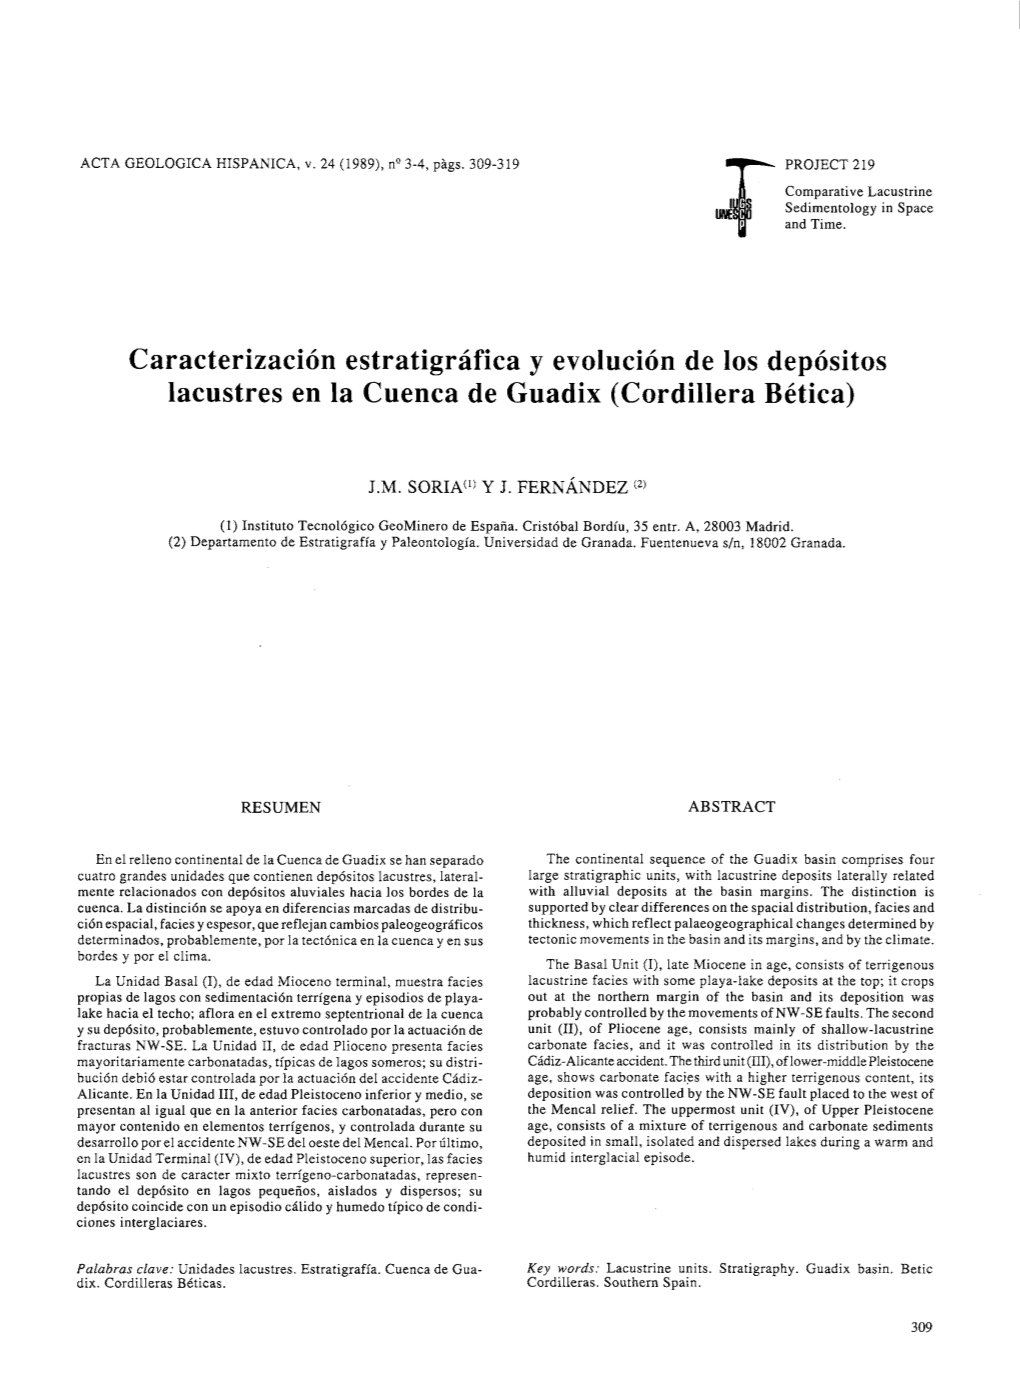 Caracterizacion Estratigrafica Y Evolucion De 10S Depositos Lacustres En La Cuenca De Guadix (Cordillera Betica)